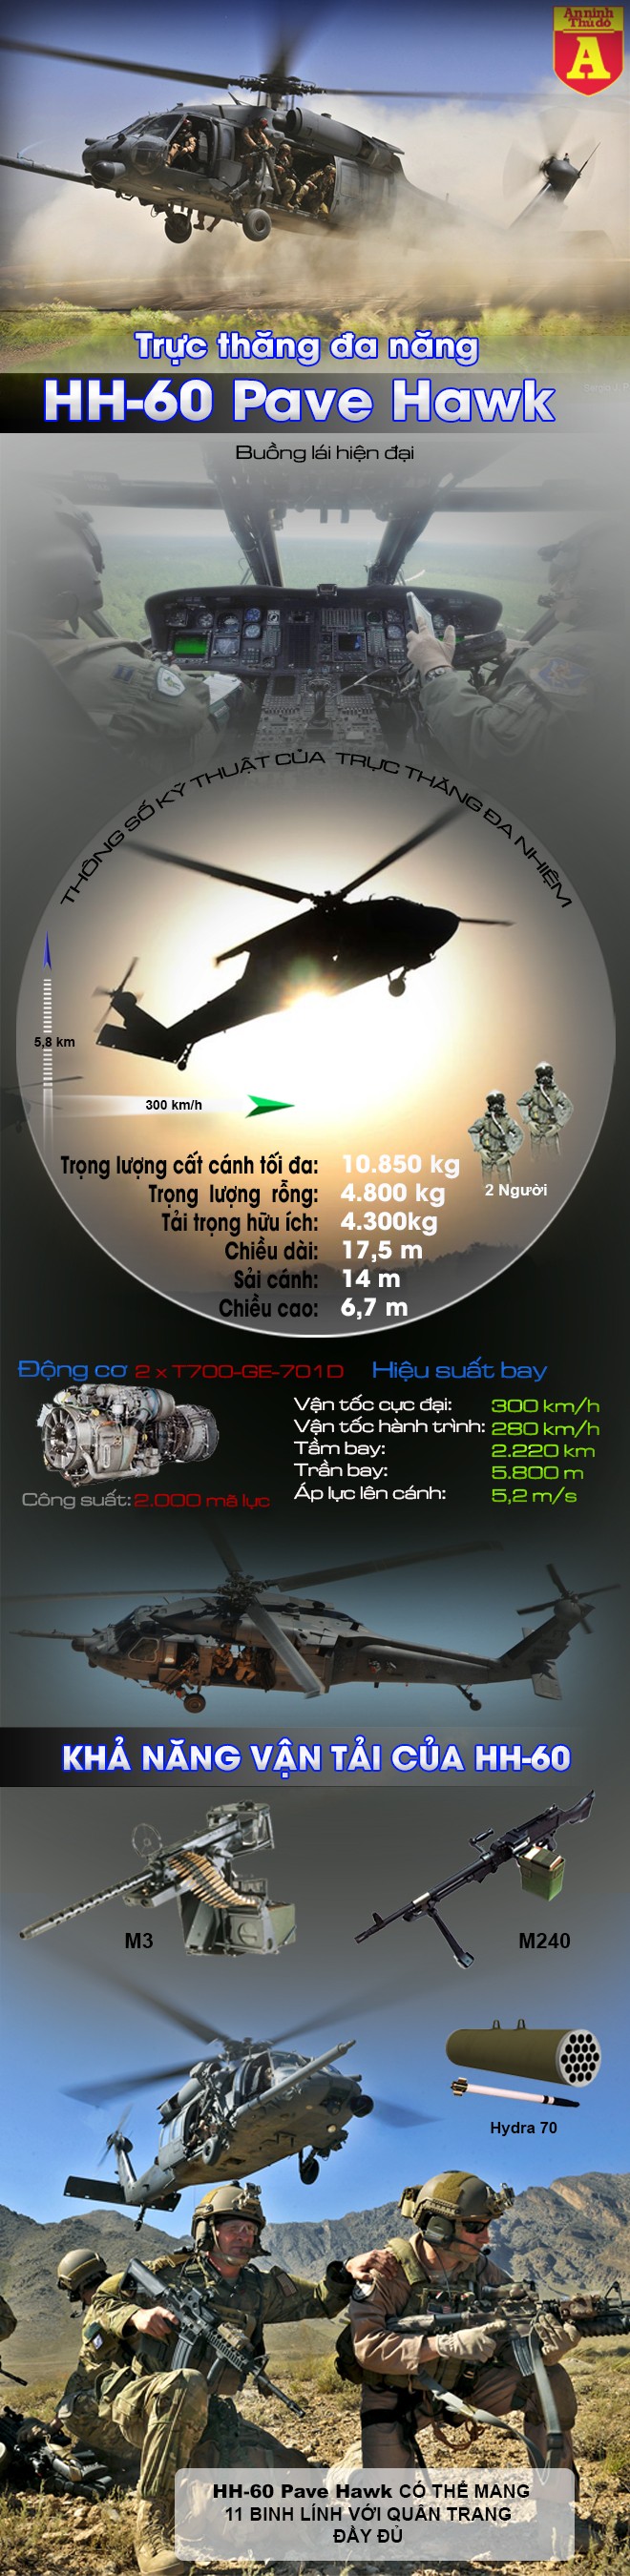 [Infographic] Phải chăng IS đã bắn hạ trực thăng đa năng của Mỹ tại biên giới Syria? ảnh 2